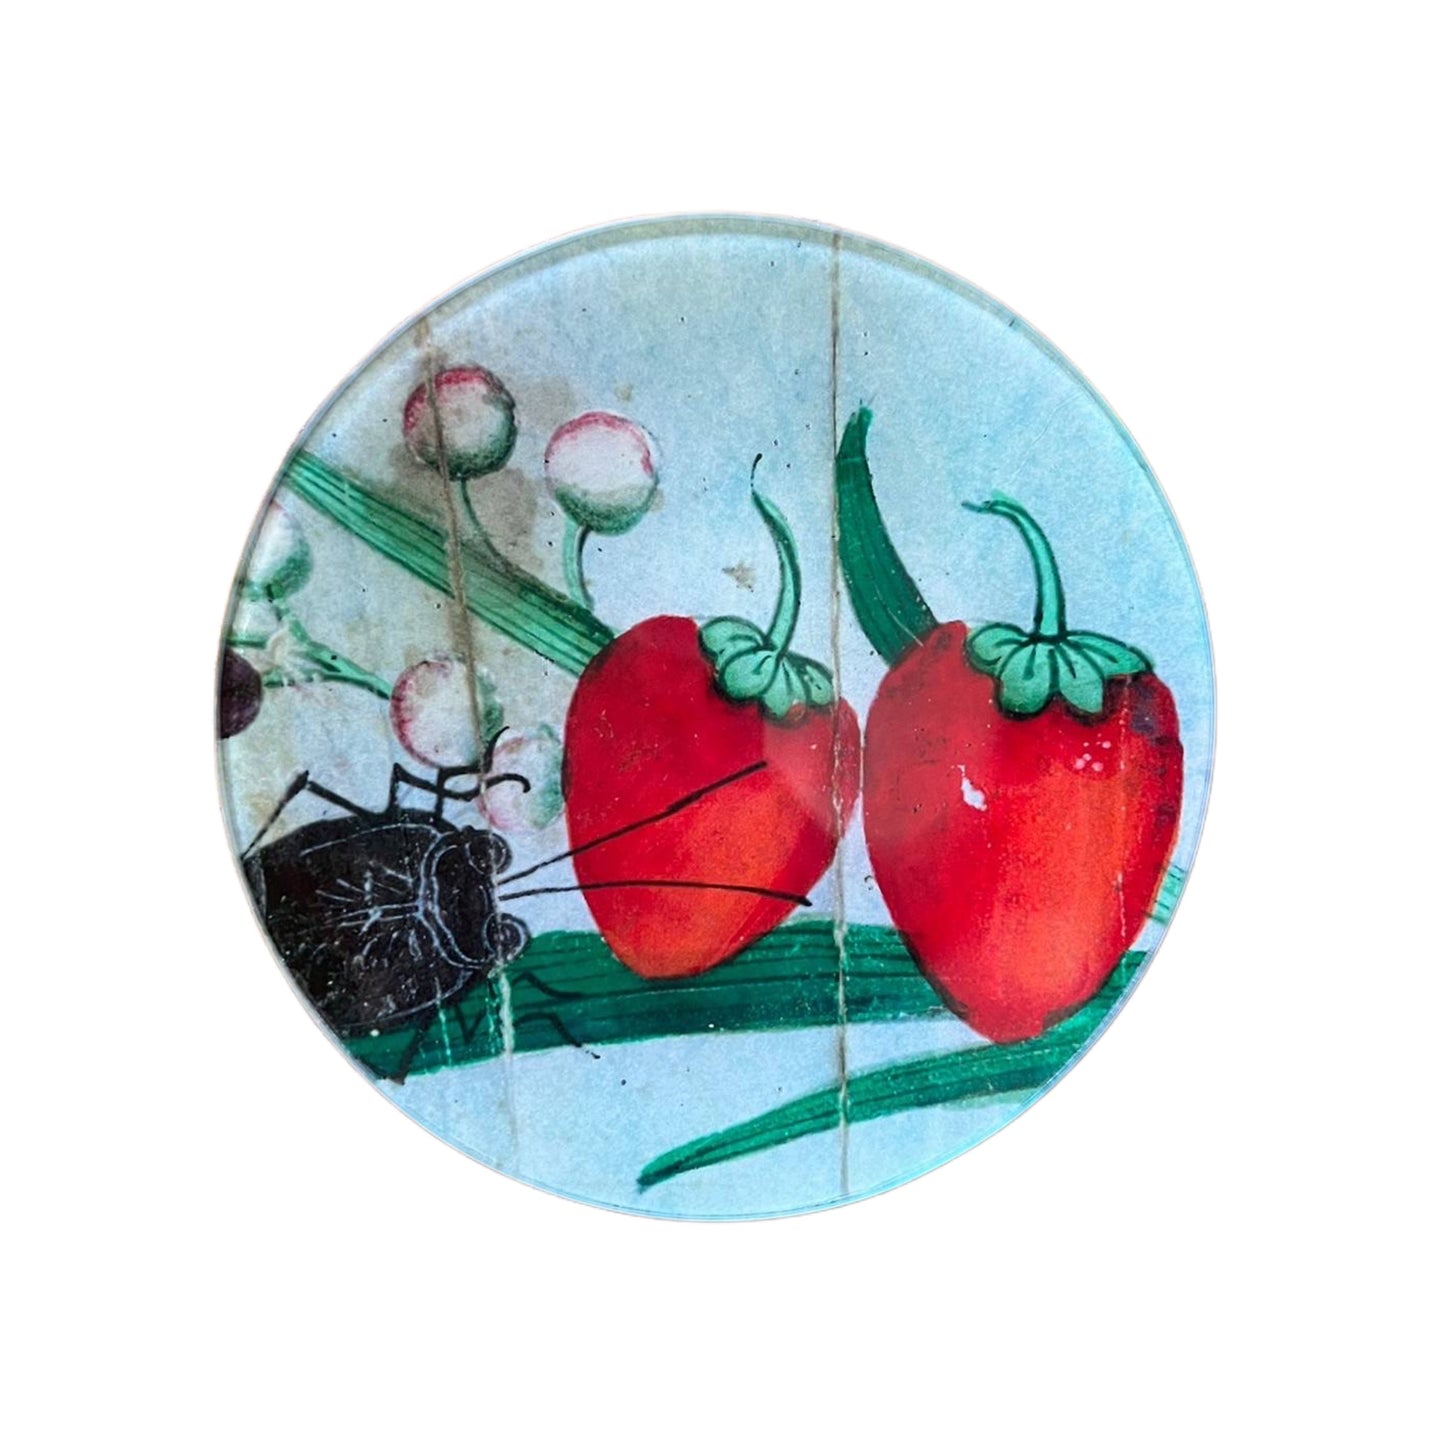 【JOHN DERIAN】デコパージュプレート 18c Fan Detail - Strawberries